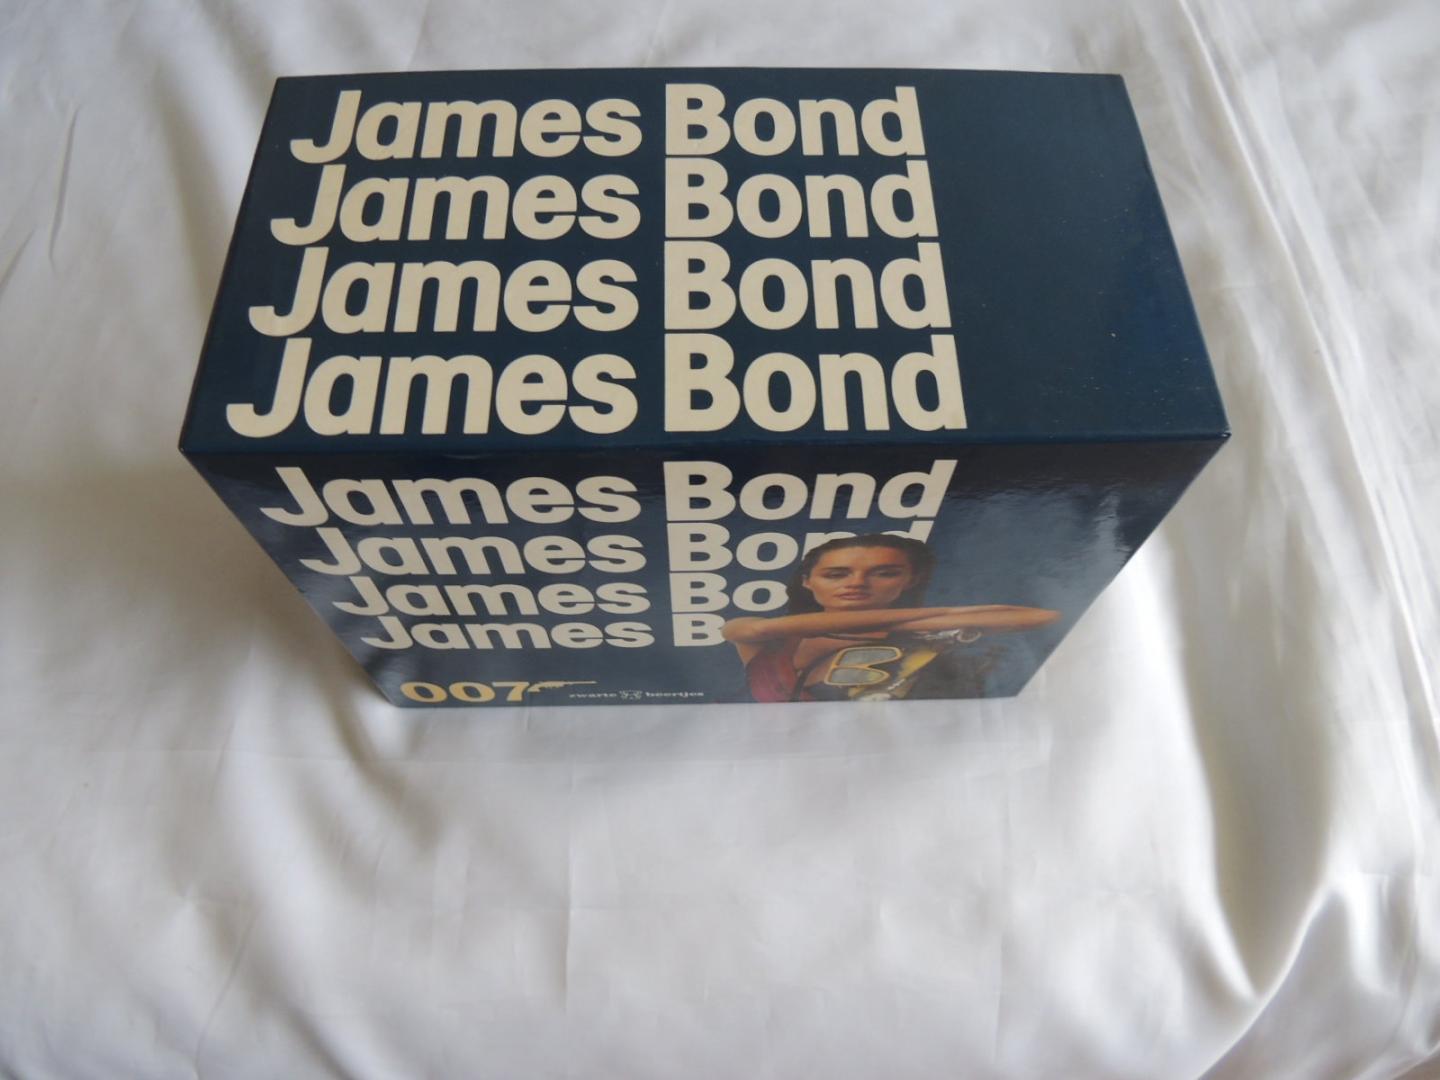 Fleming Ian - James Bond 007 - 15 delen in cassette Casino royale/Moord onder water/Hoog spel/ Doden voor diamanten/Veel liefs uit Moskou/Docter No/De man met de gouden vingers/Van een blik tot een moord/Kalm aan Mr.Bond/De spion die mij beminde/octopussy/r...